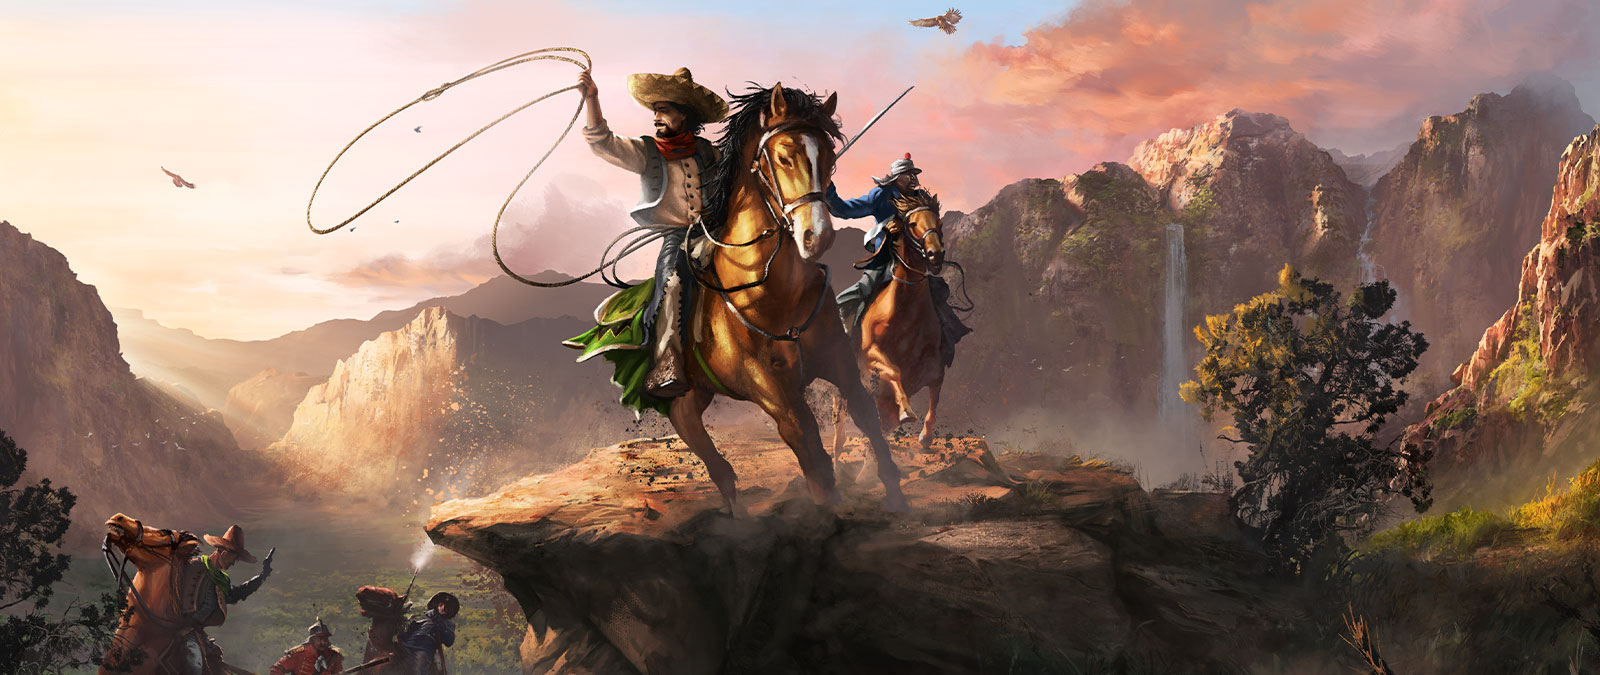 Deux personnages à cheval équipés dʼun lasso et dʼune épée traversent une grande vallée.